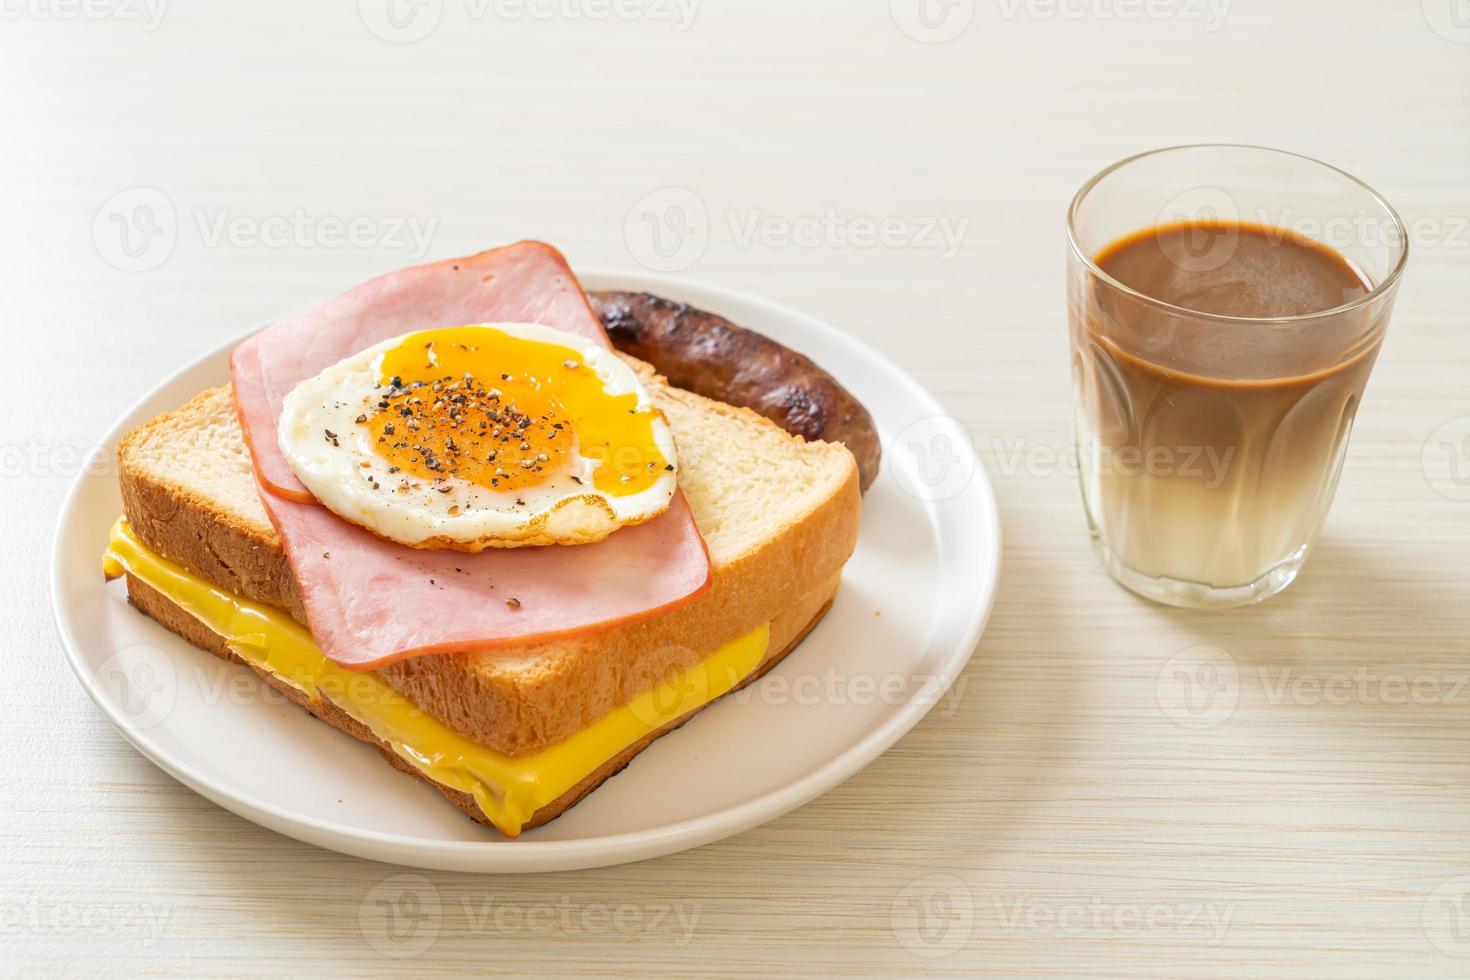 hausgemachtes Brot, gerösteter Käse, belegter Schinken und Spiegelei mit Schweinswurst zum Frühstück foto